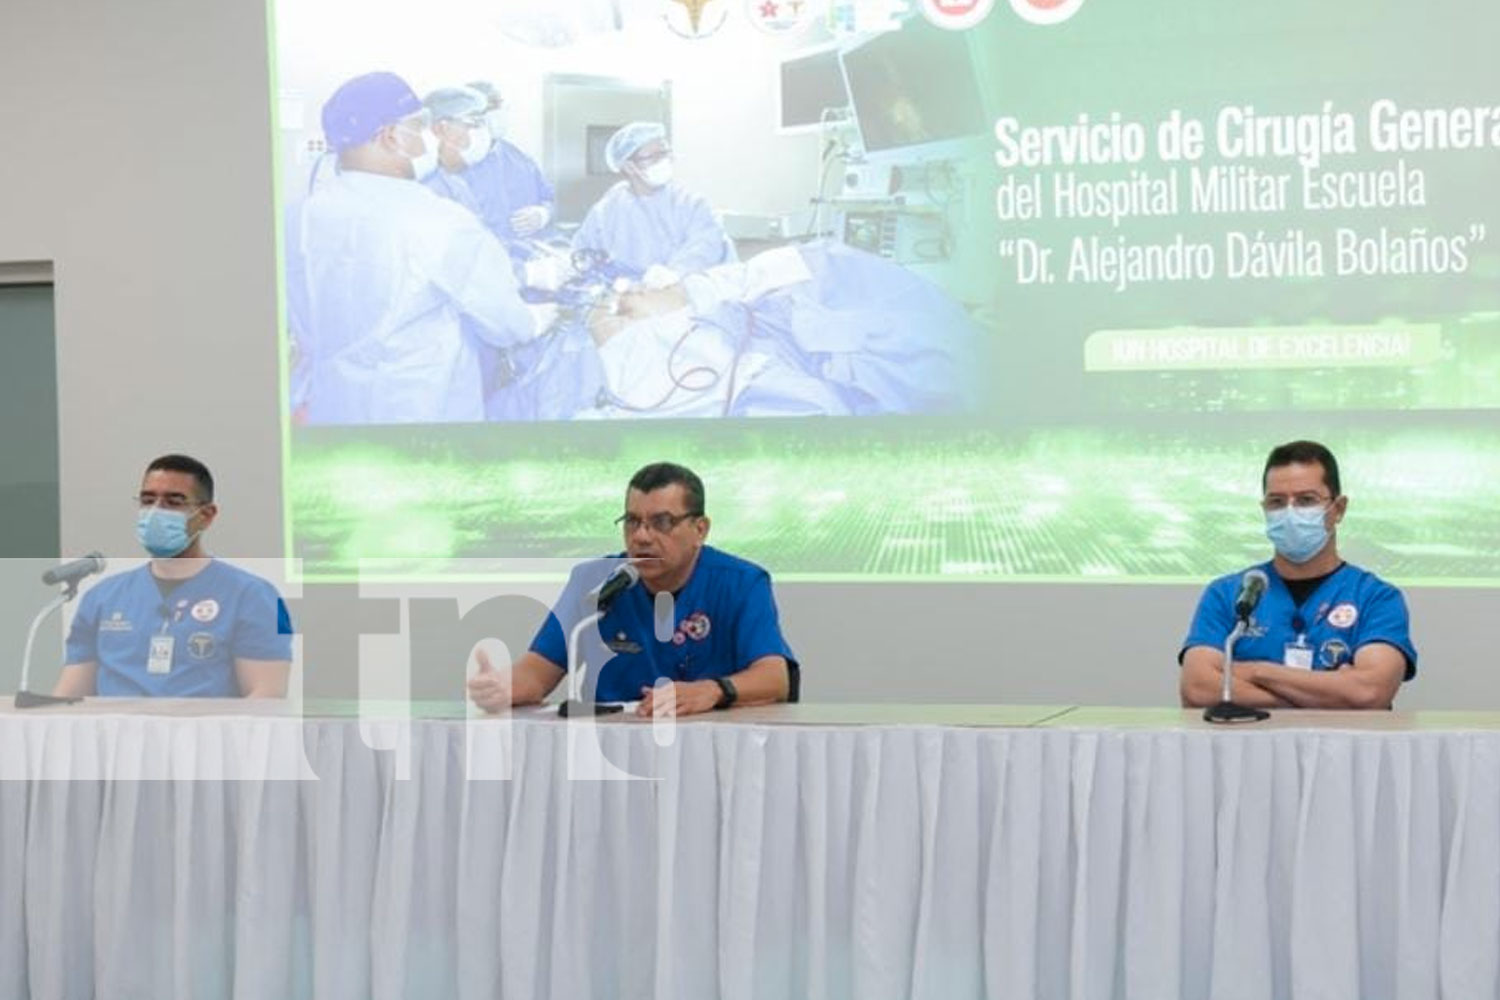 Hospital Militar "Dr. Alejandro Dávila Bolaños" con servicio de cirugía general de alto nivel